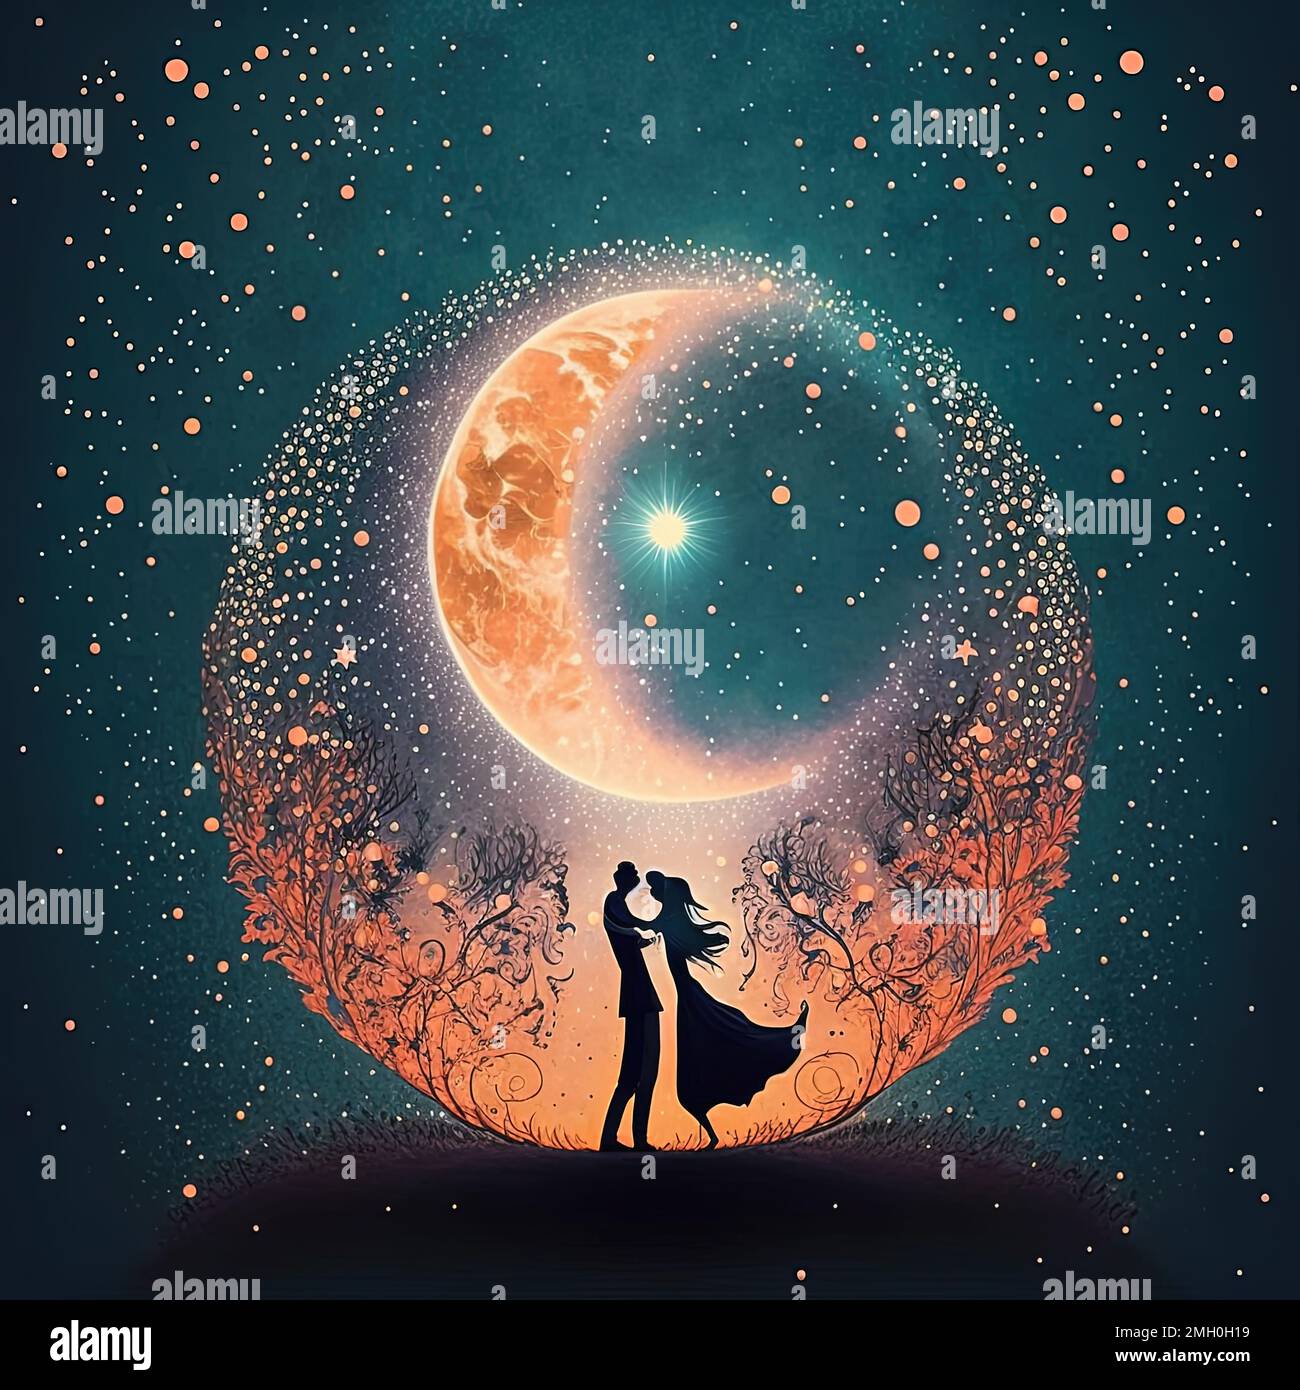 Une illustration rêveuse d'un couple dansant sous une pleine lune avec un fond de coeurs et d'étoiles Banque D'Images